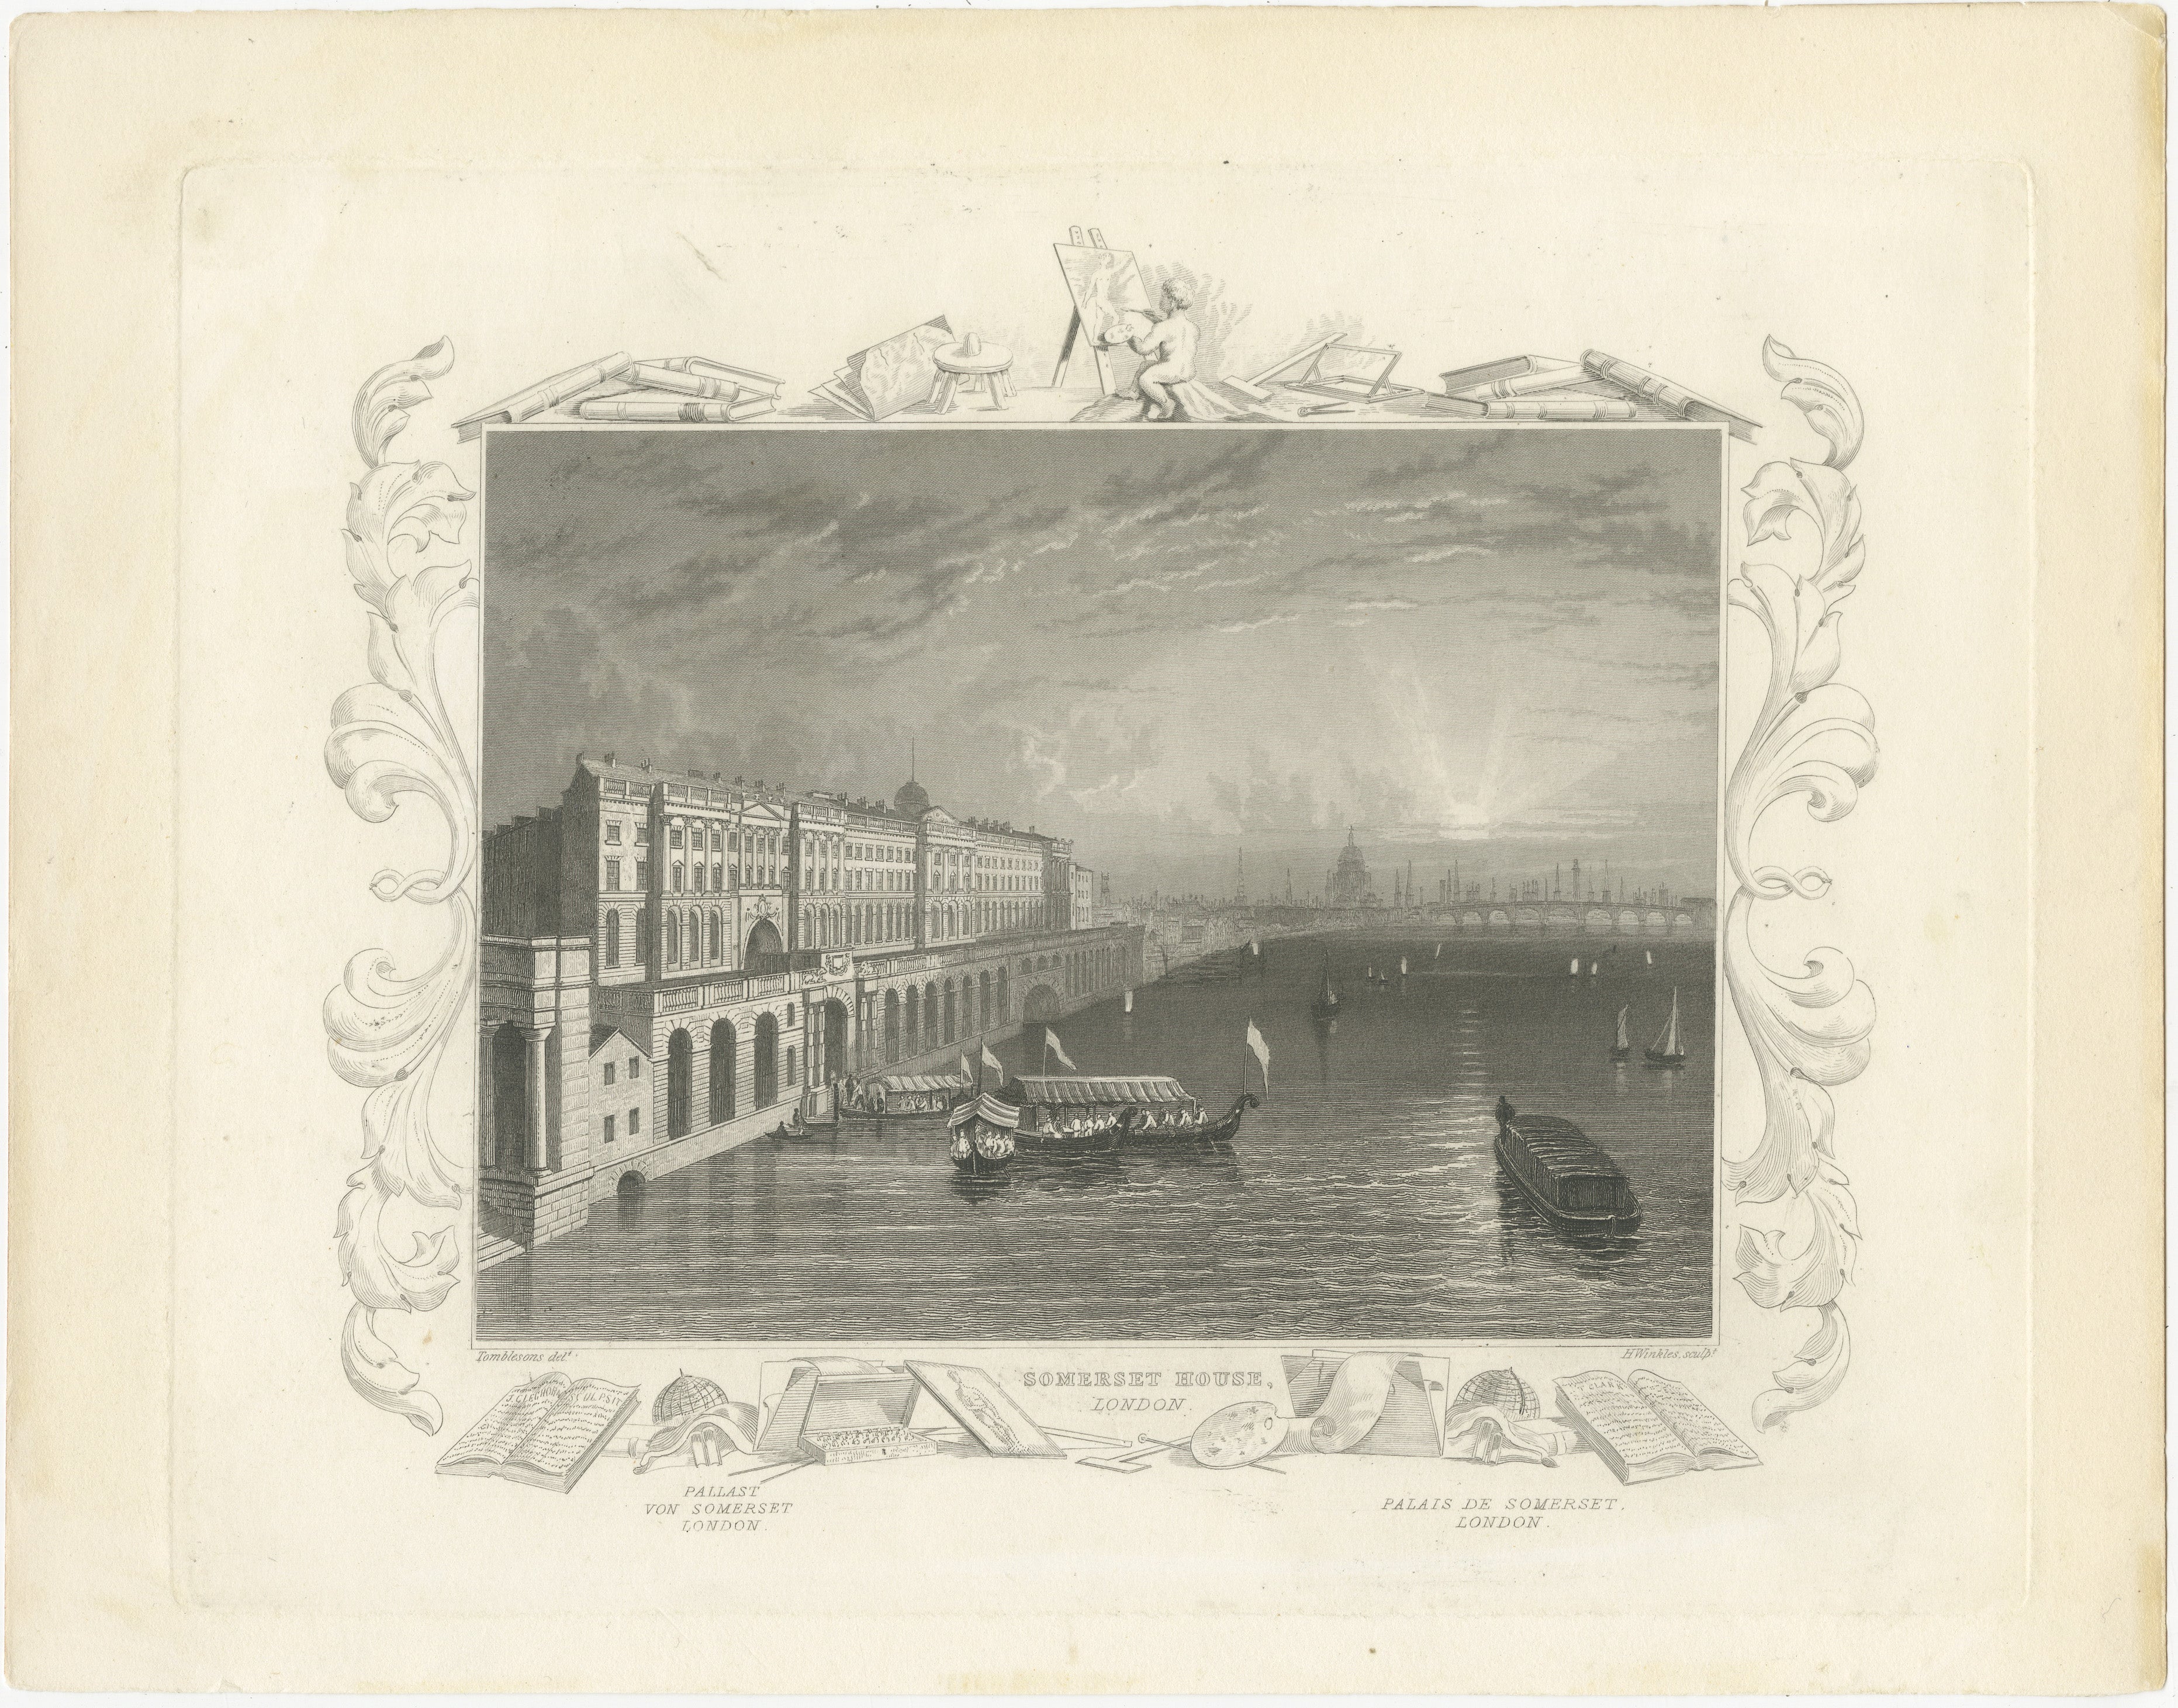 L'image  est une gravure originale sur acier de The Somerset House, un grand bâtiment néoclassique situé sur le côté sud du Strand, dans le centre de Londres. La gravure a été dessinée par Tombleson et gravée par H. Winkles, ce qui indique qu'il